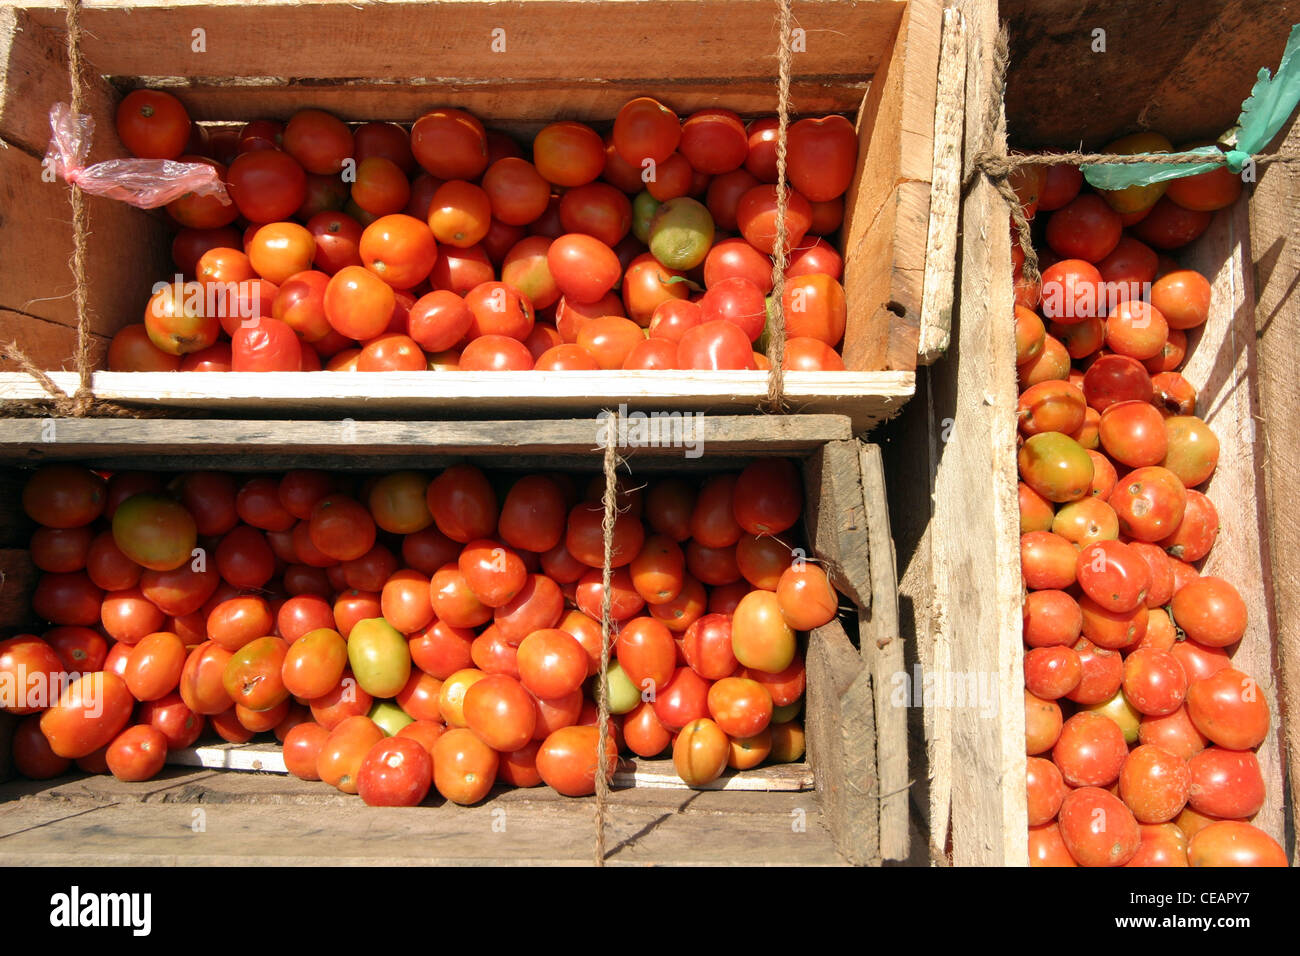 Crates of Tomatoes on sale at a market, Hikkaduwa, Sri Lanka Stock Photo